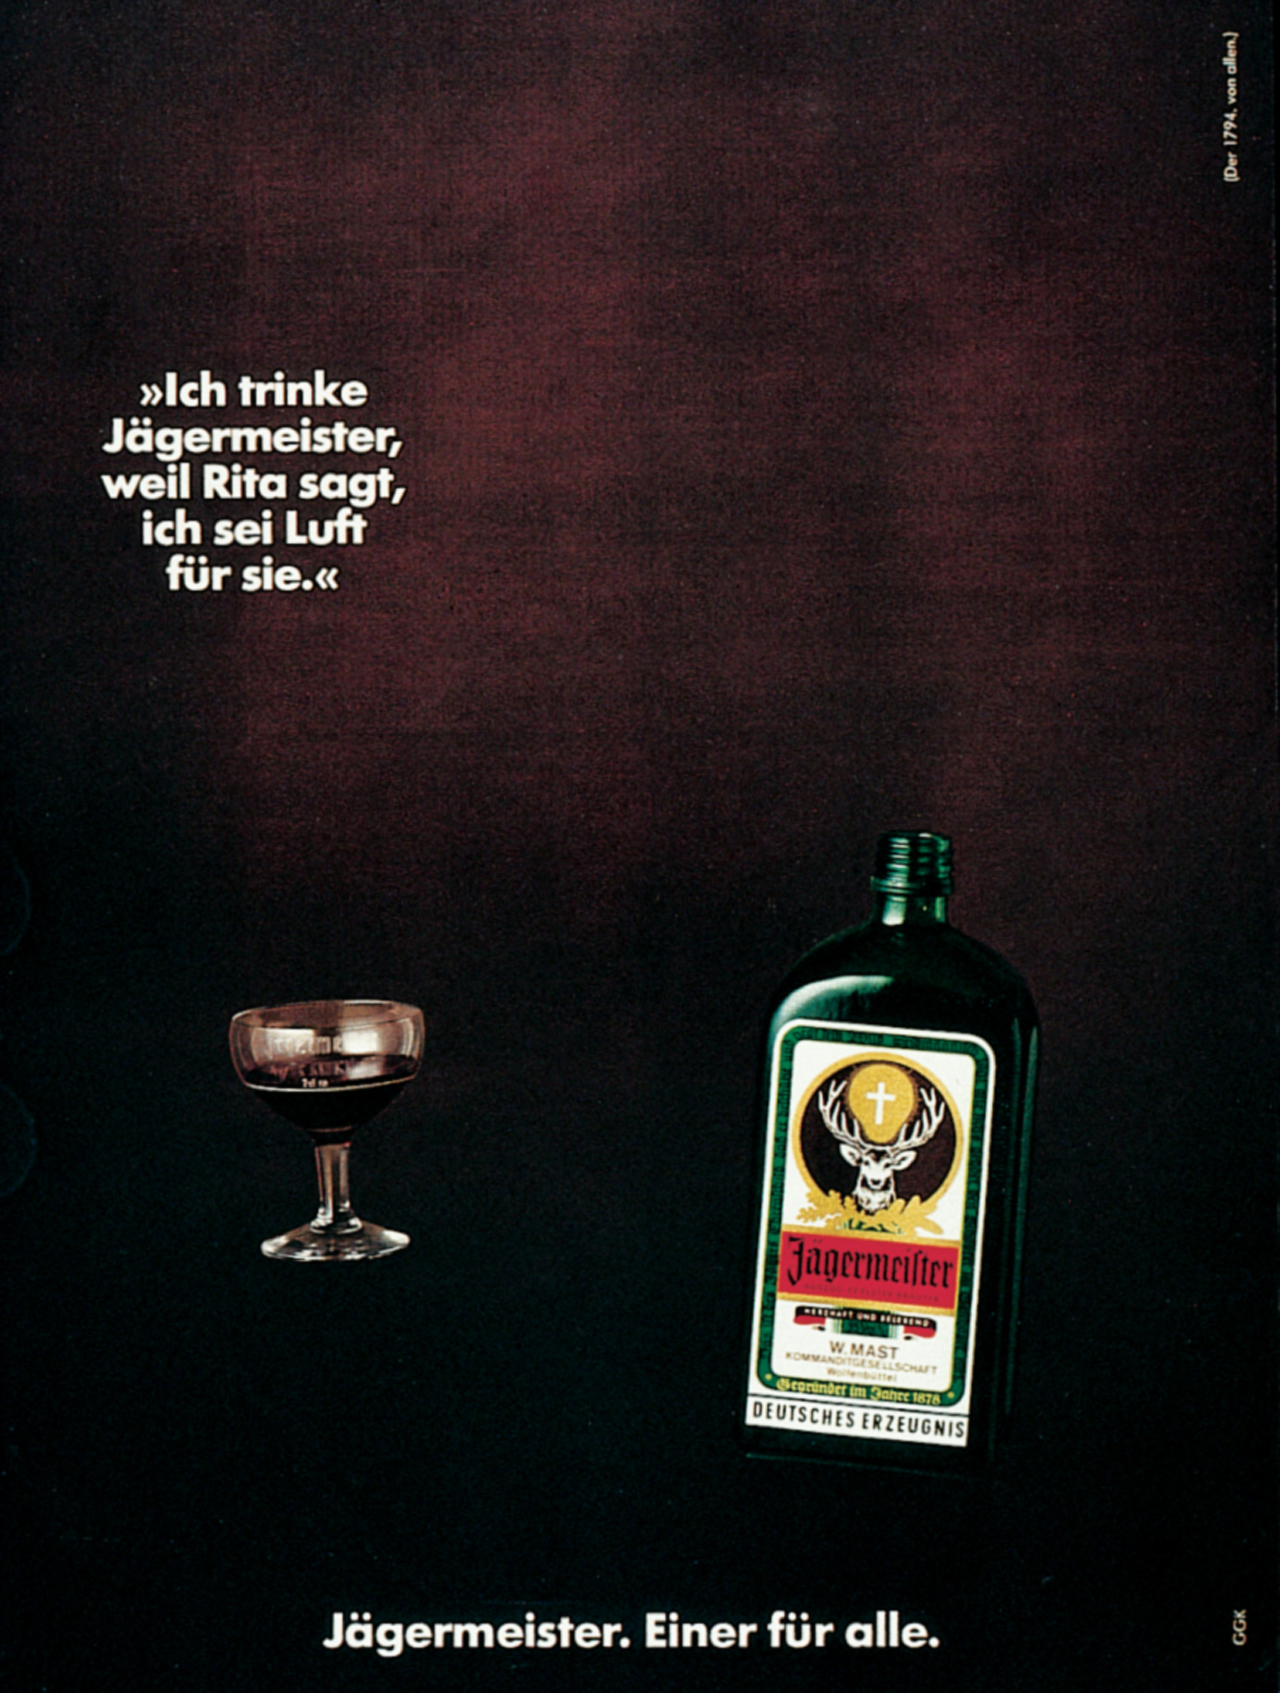 Anzeige für Jägermeister, 1973 - 1986